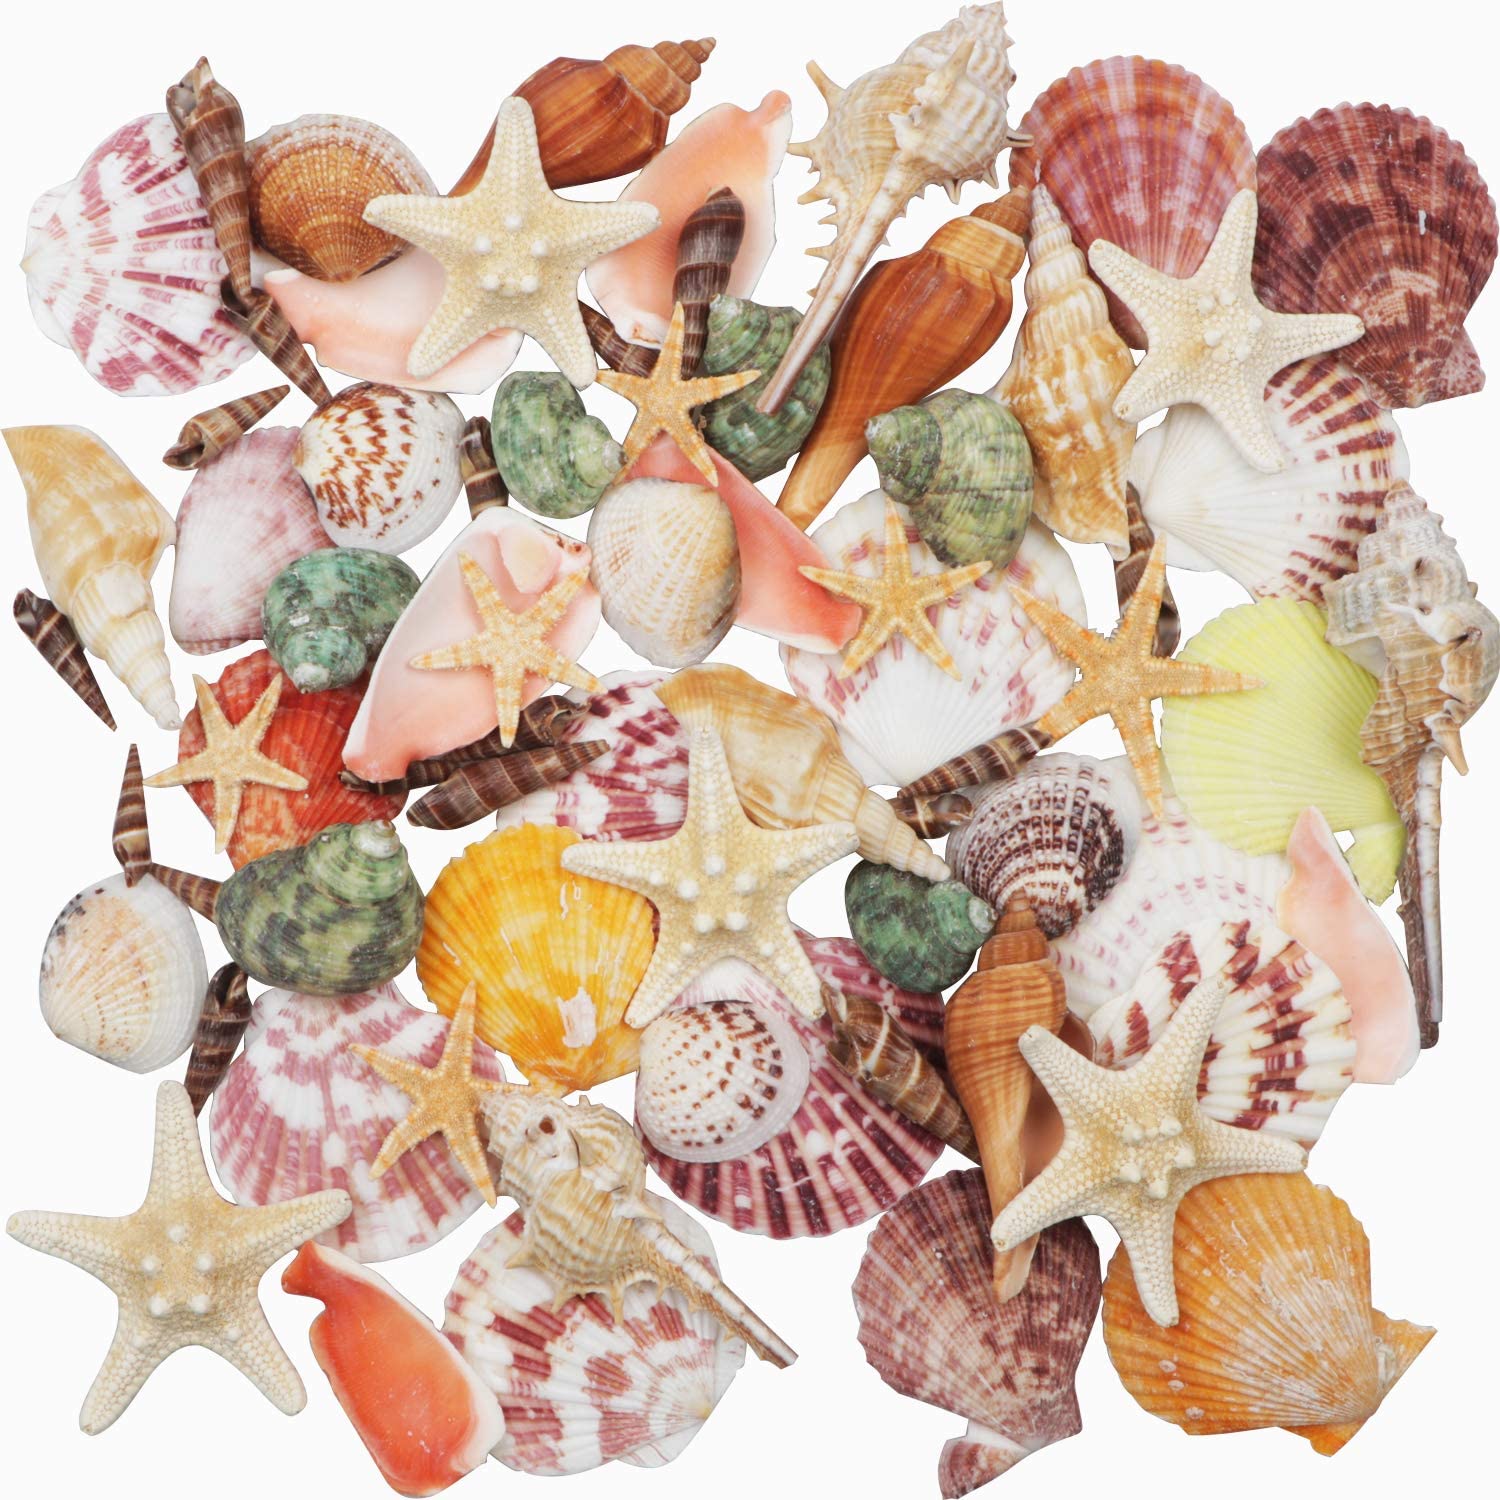 Fangoo Sea Shells Mixed Beach Seashells